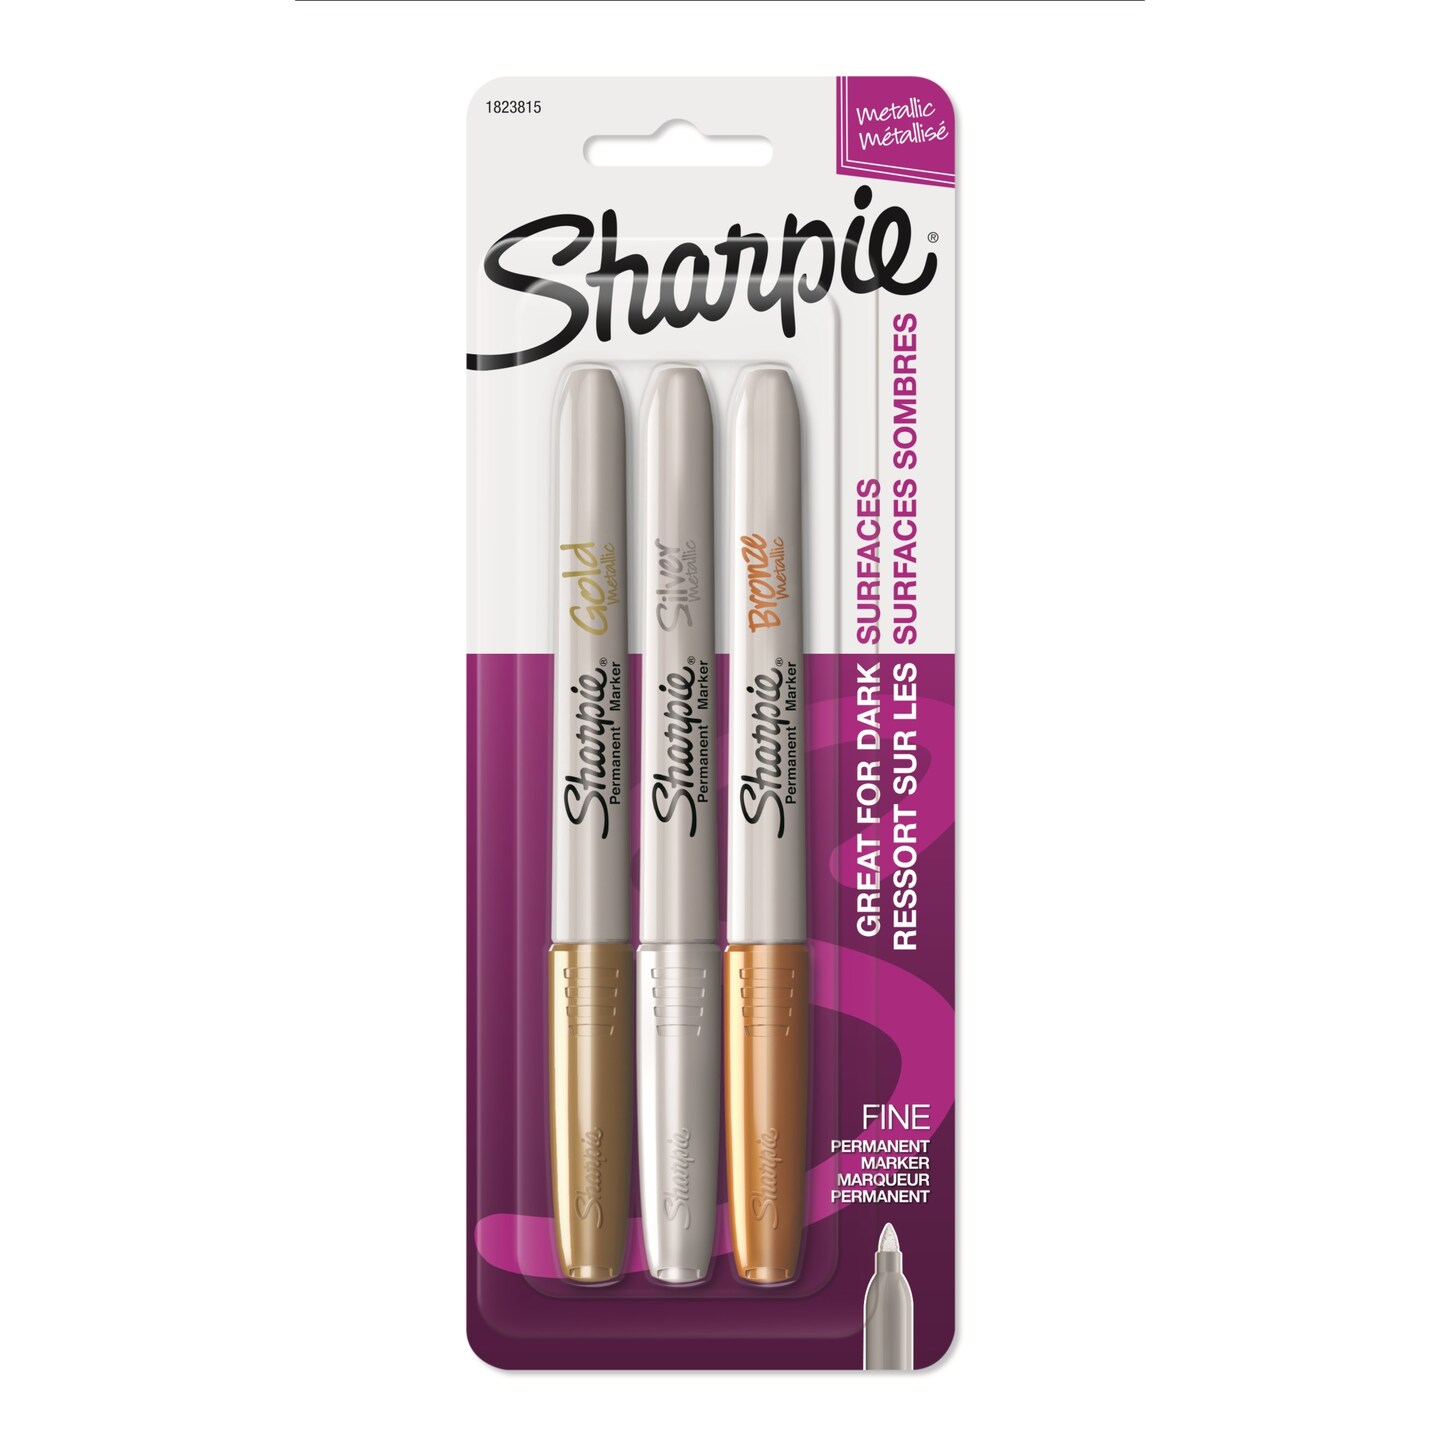 Sharpie Metallic Permanent Marker - Fine Point - 3 Color Set